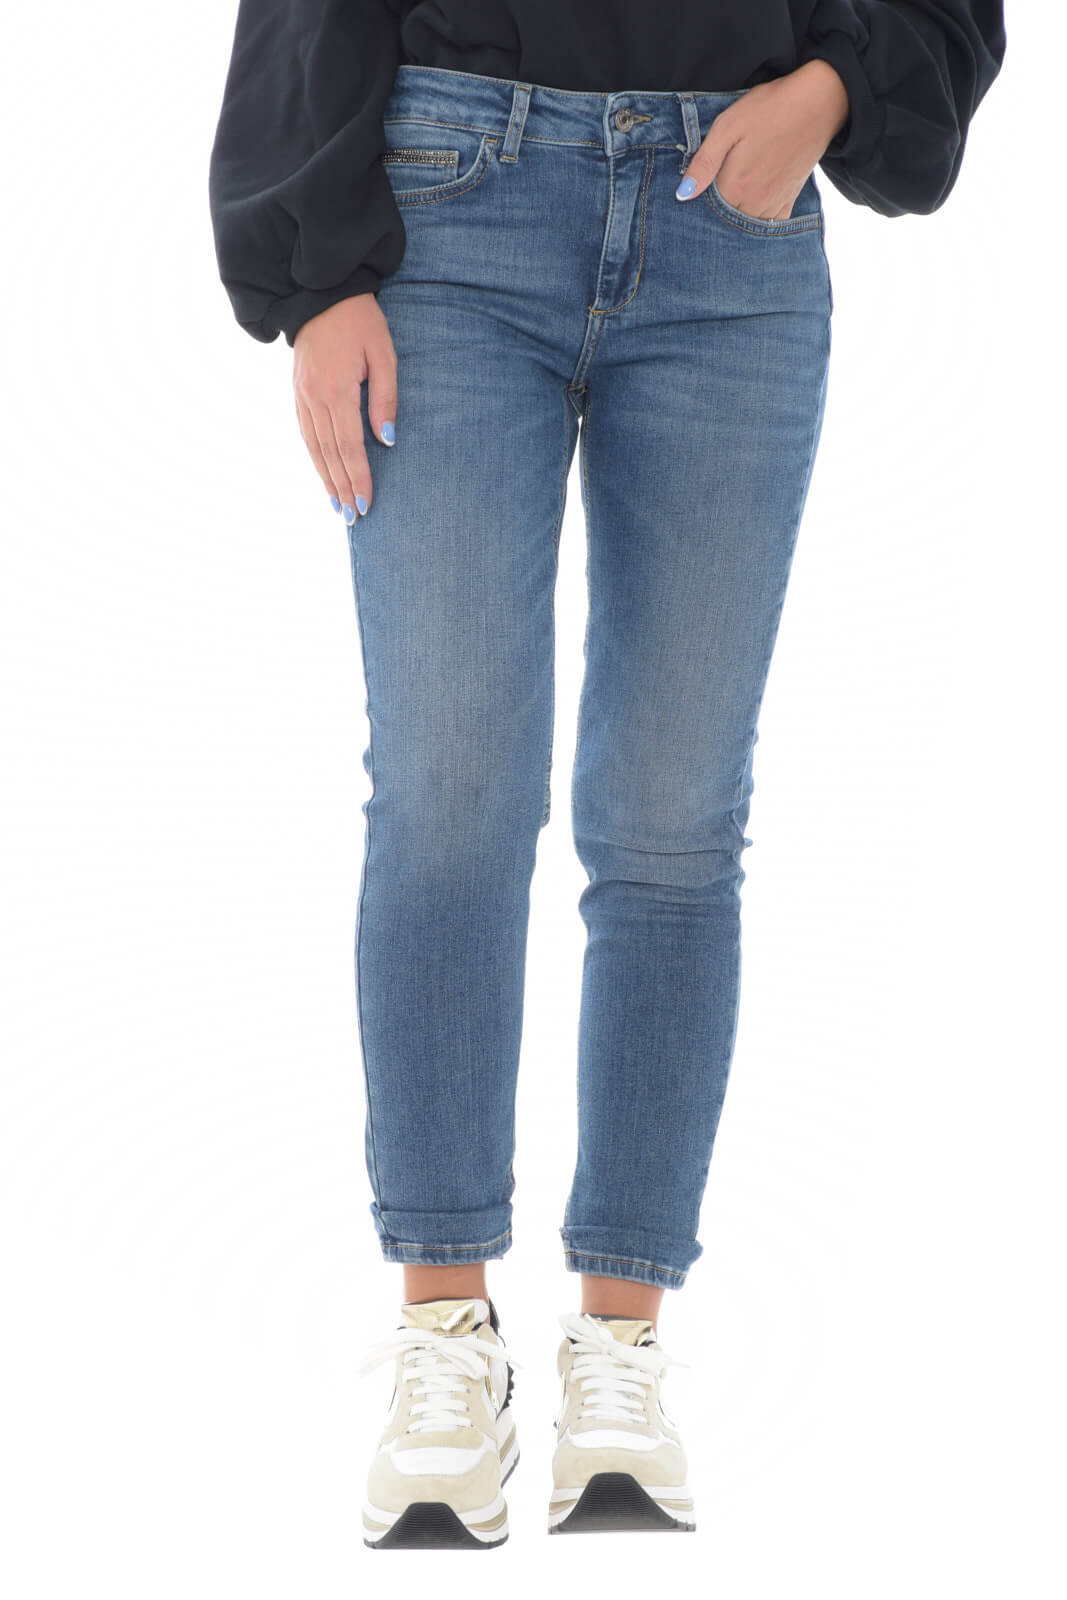 Liu Jo women's jeans Bottom Up Skinny